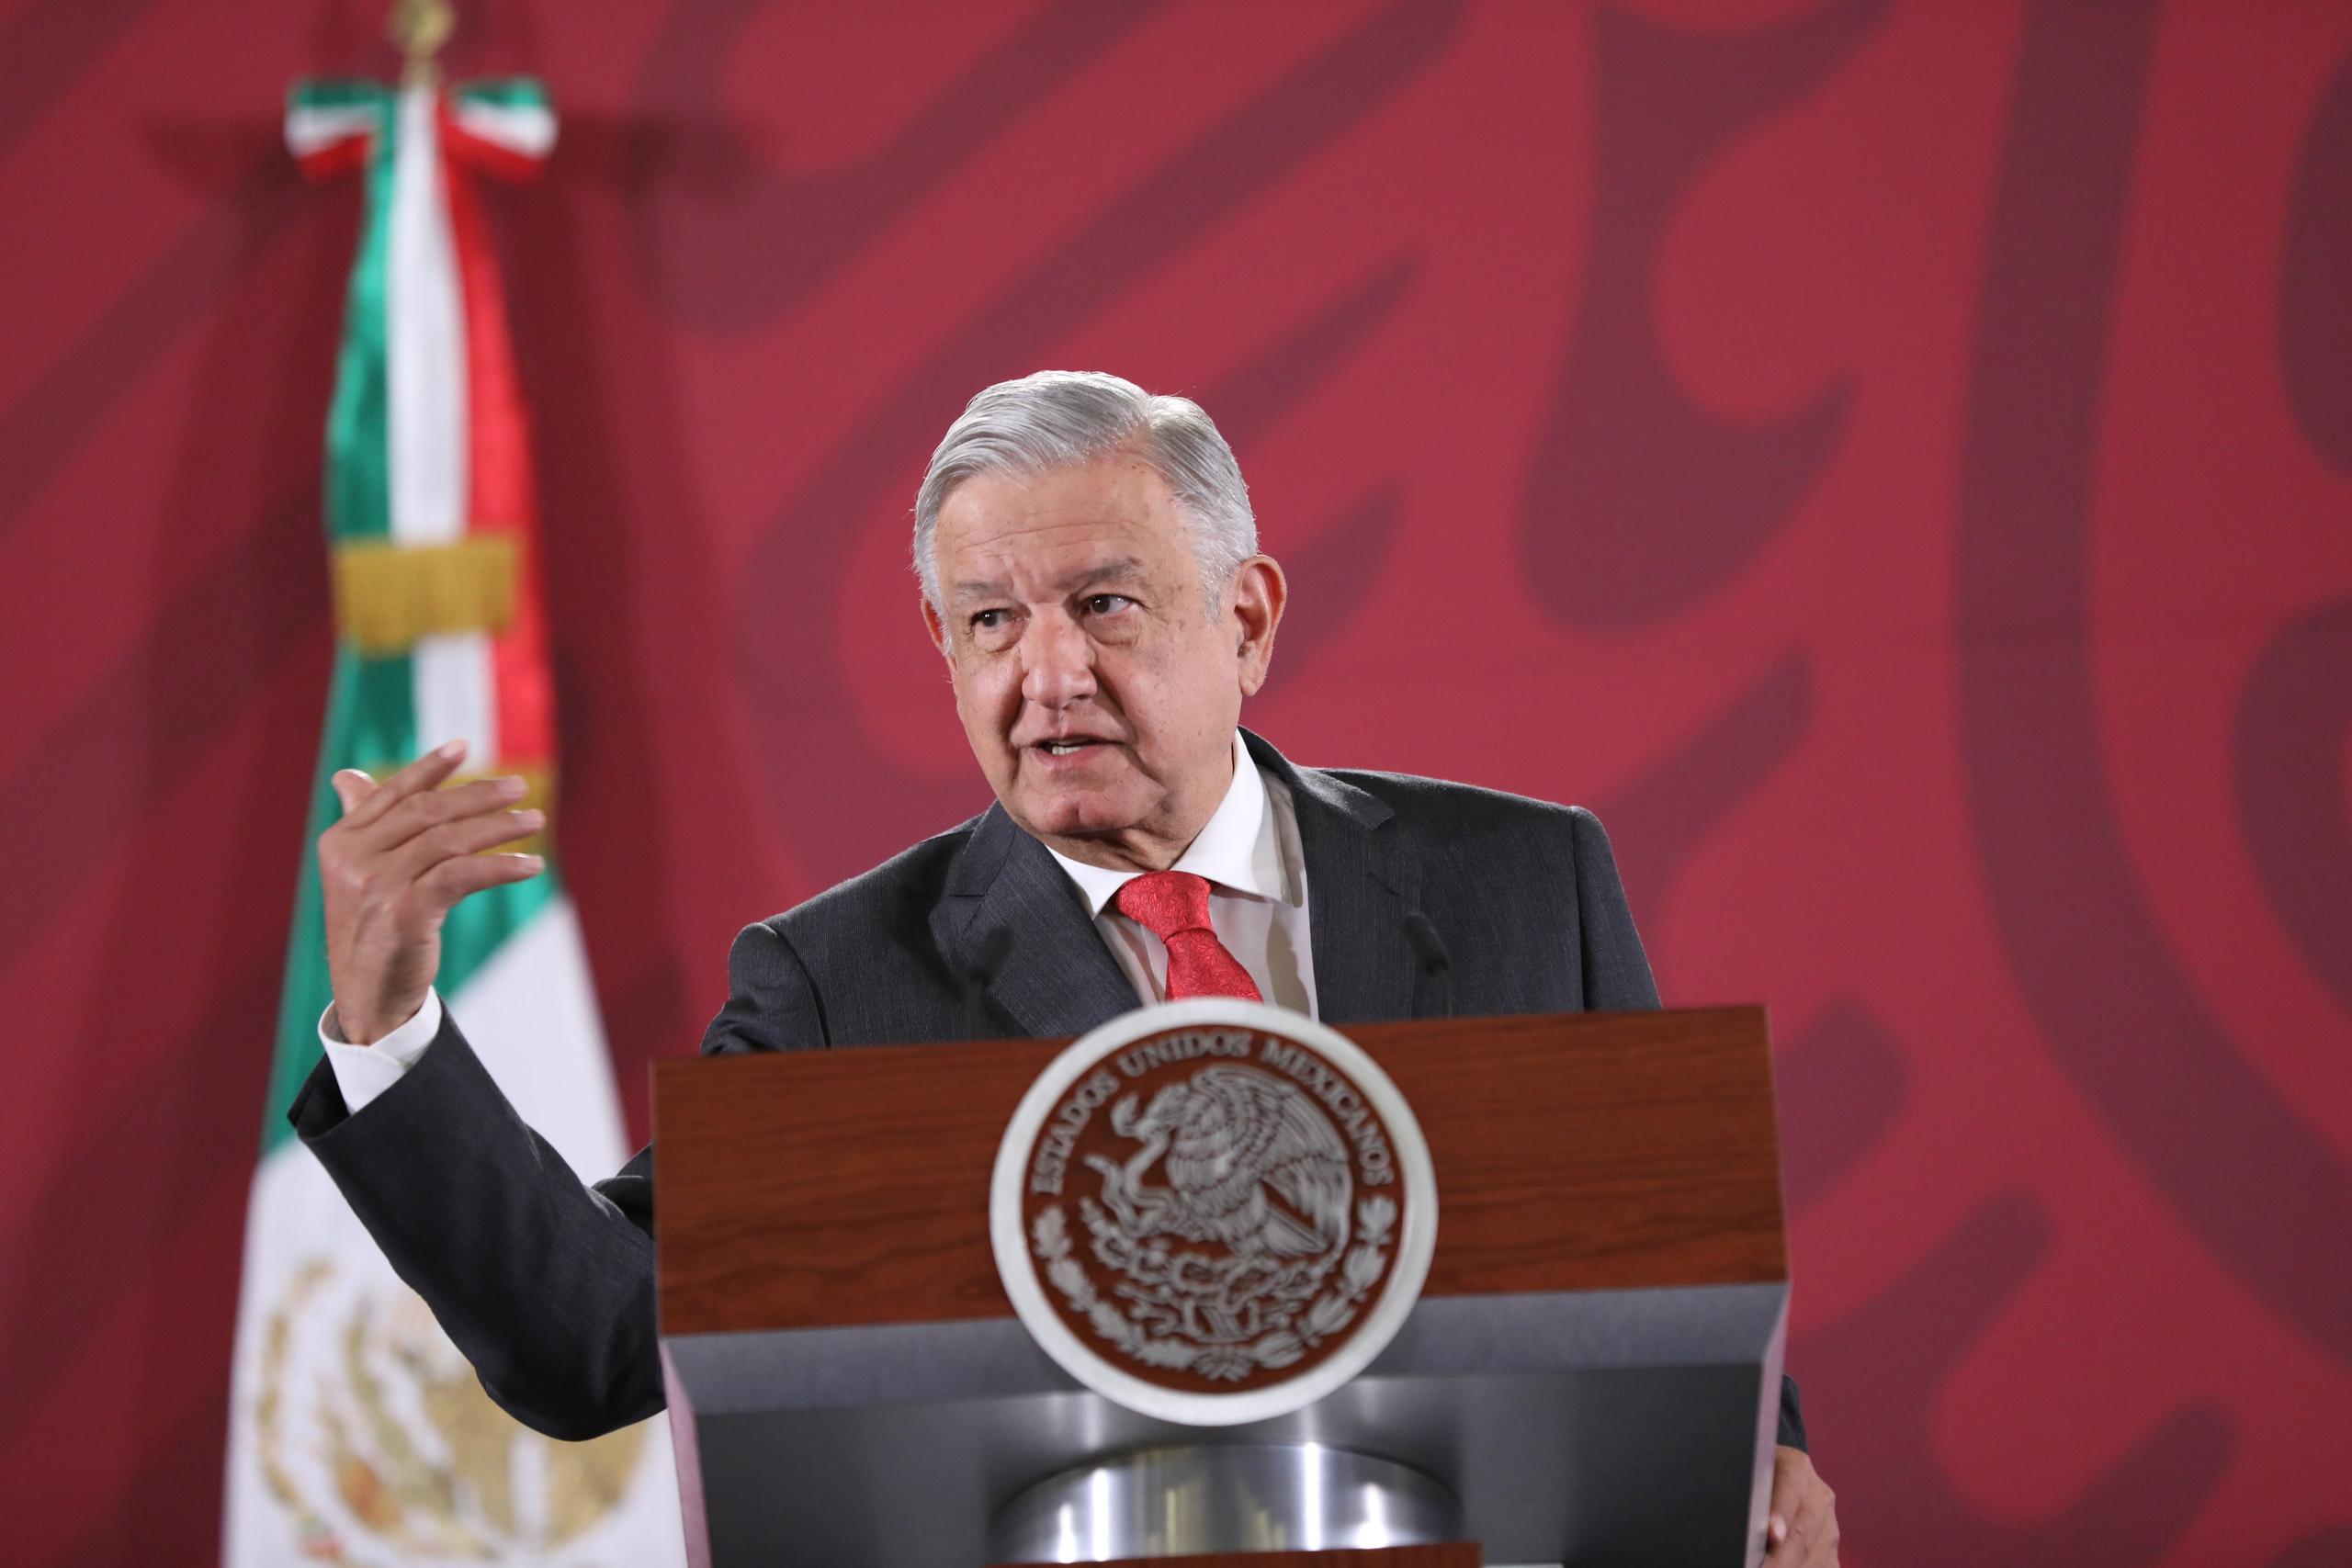 López Obrador vio positivo que se nombrara como encargada de la migración regional a la vicepresidenta Kamala Harris porque “demuestra que le importa y no soslaya el problema, lo enfrenta”.